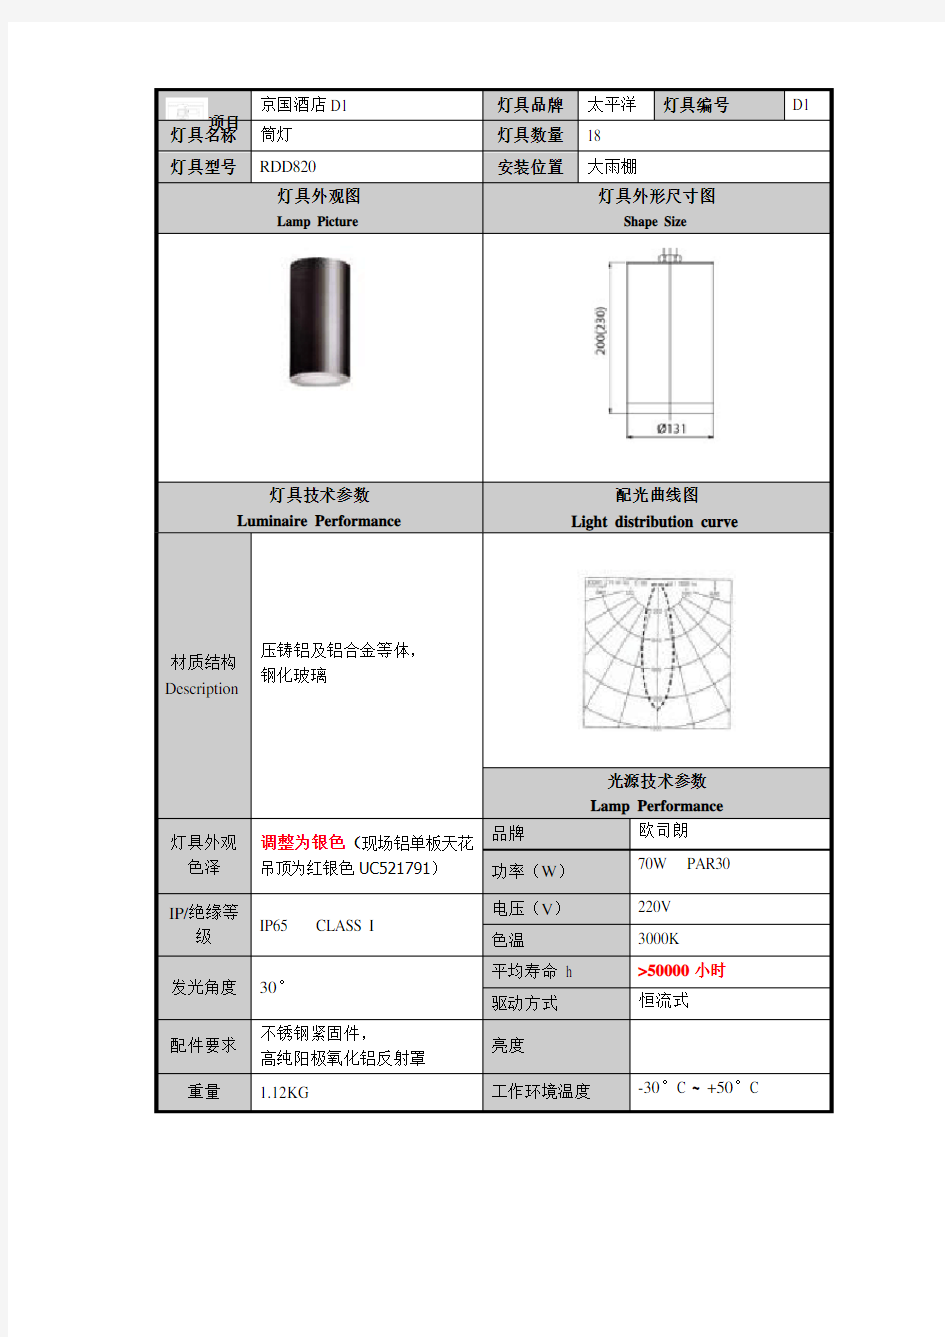 雨棚灯具选型及技术参数